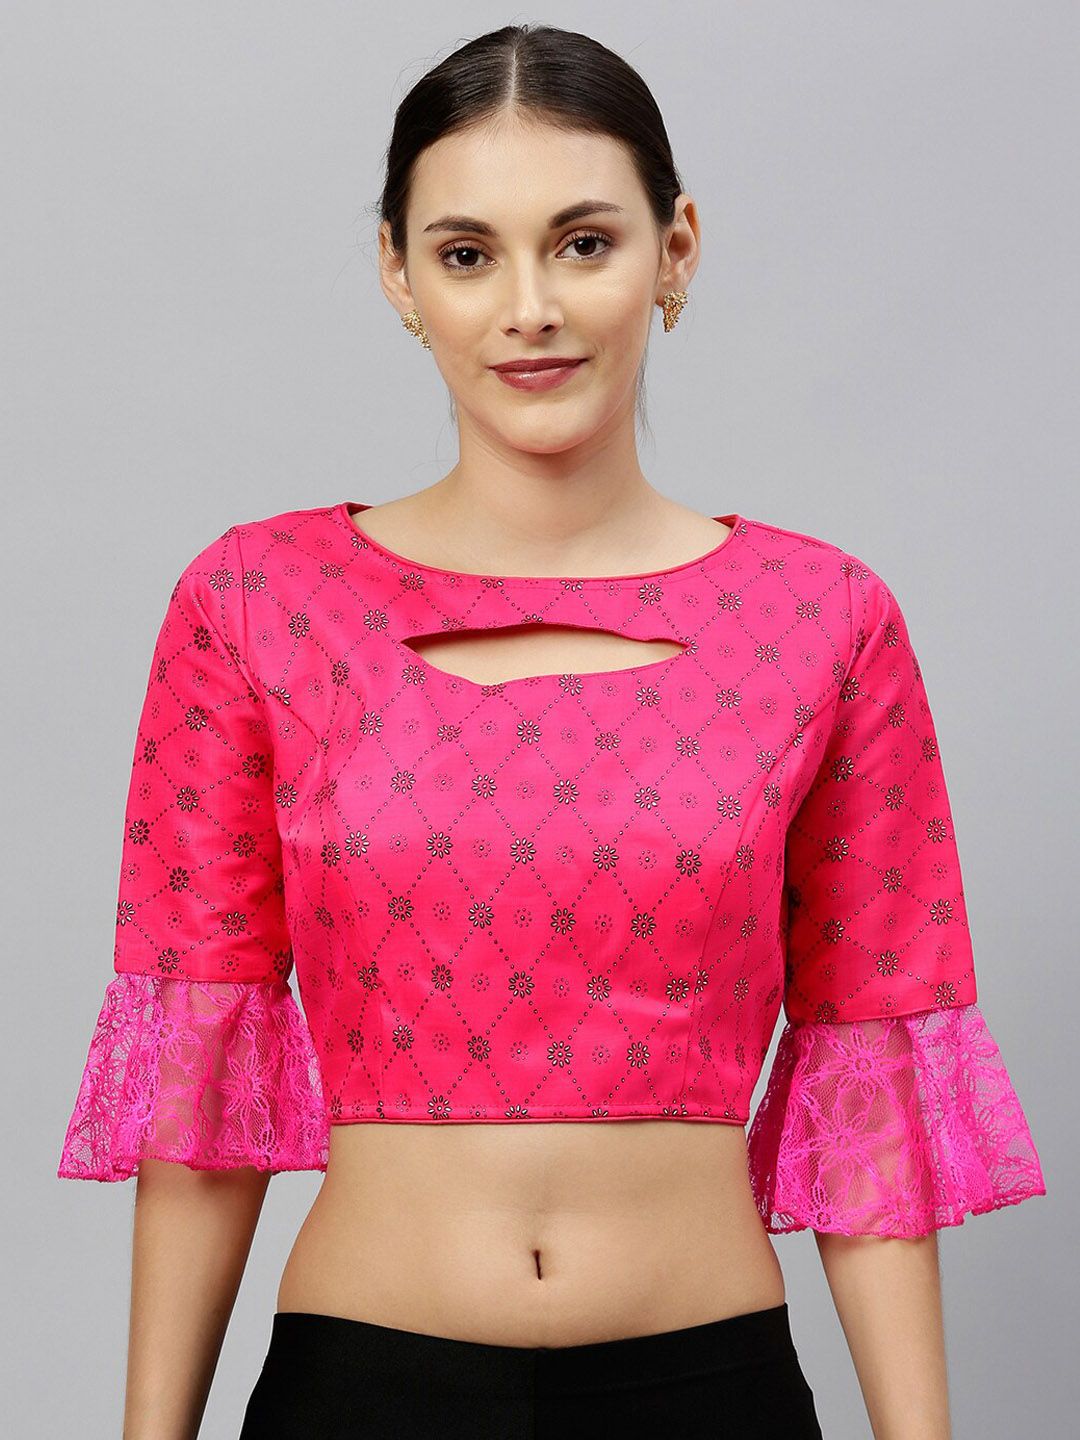 Fab Viva Women Pink & Black Printed Saree Blouse Price in India